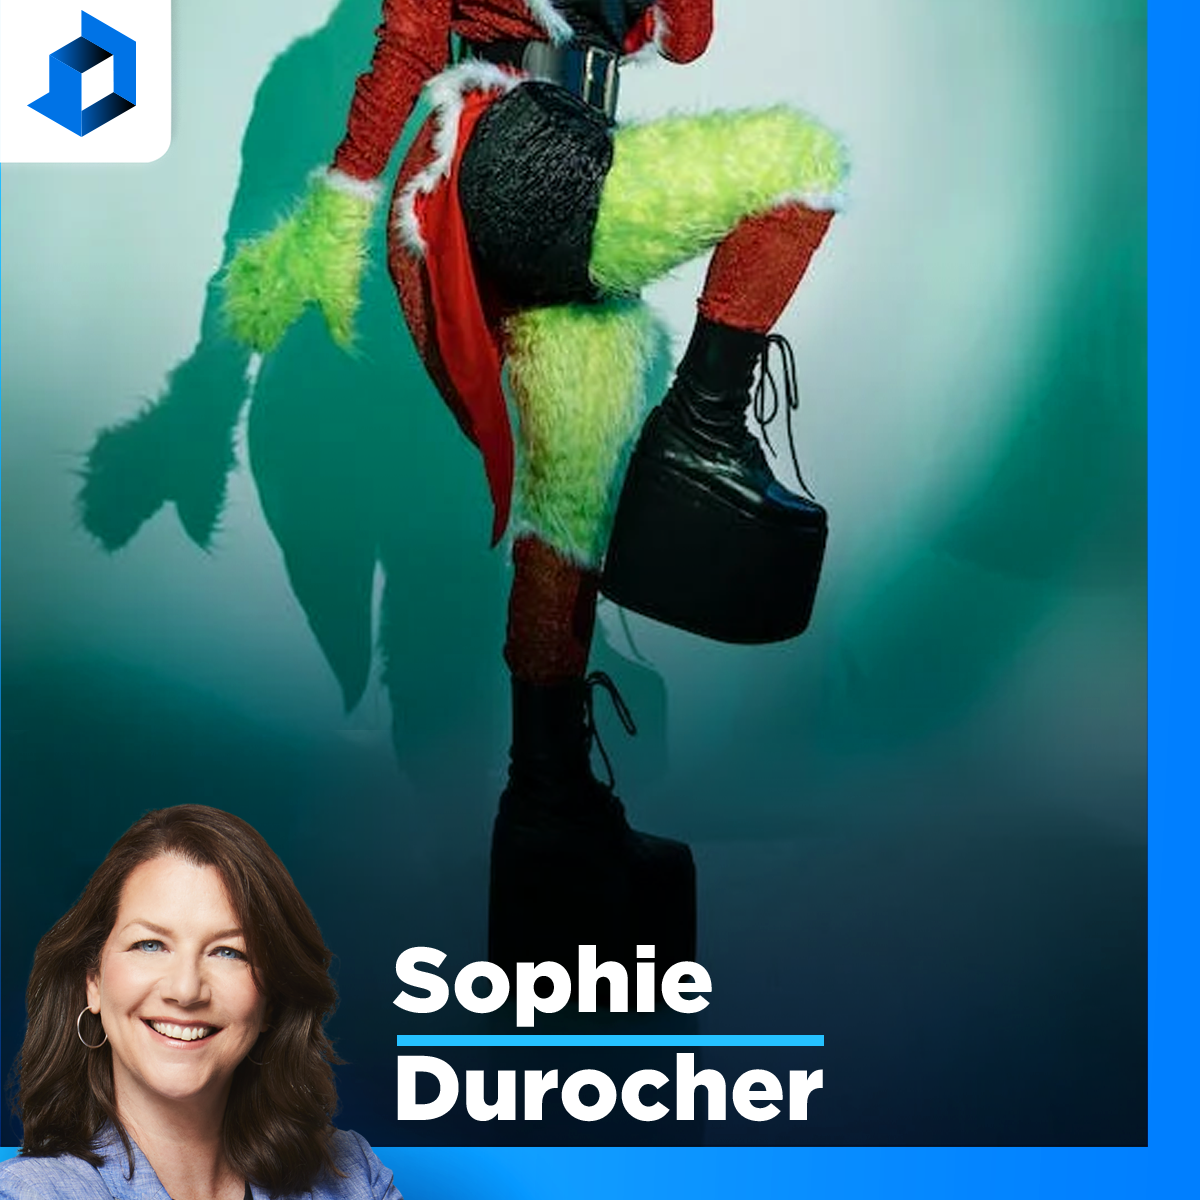 Sophie Durocher est-elle la prochaine grincheuse?